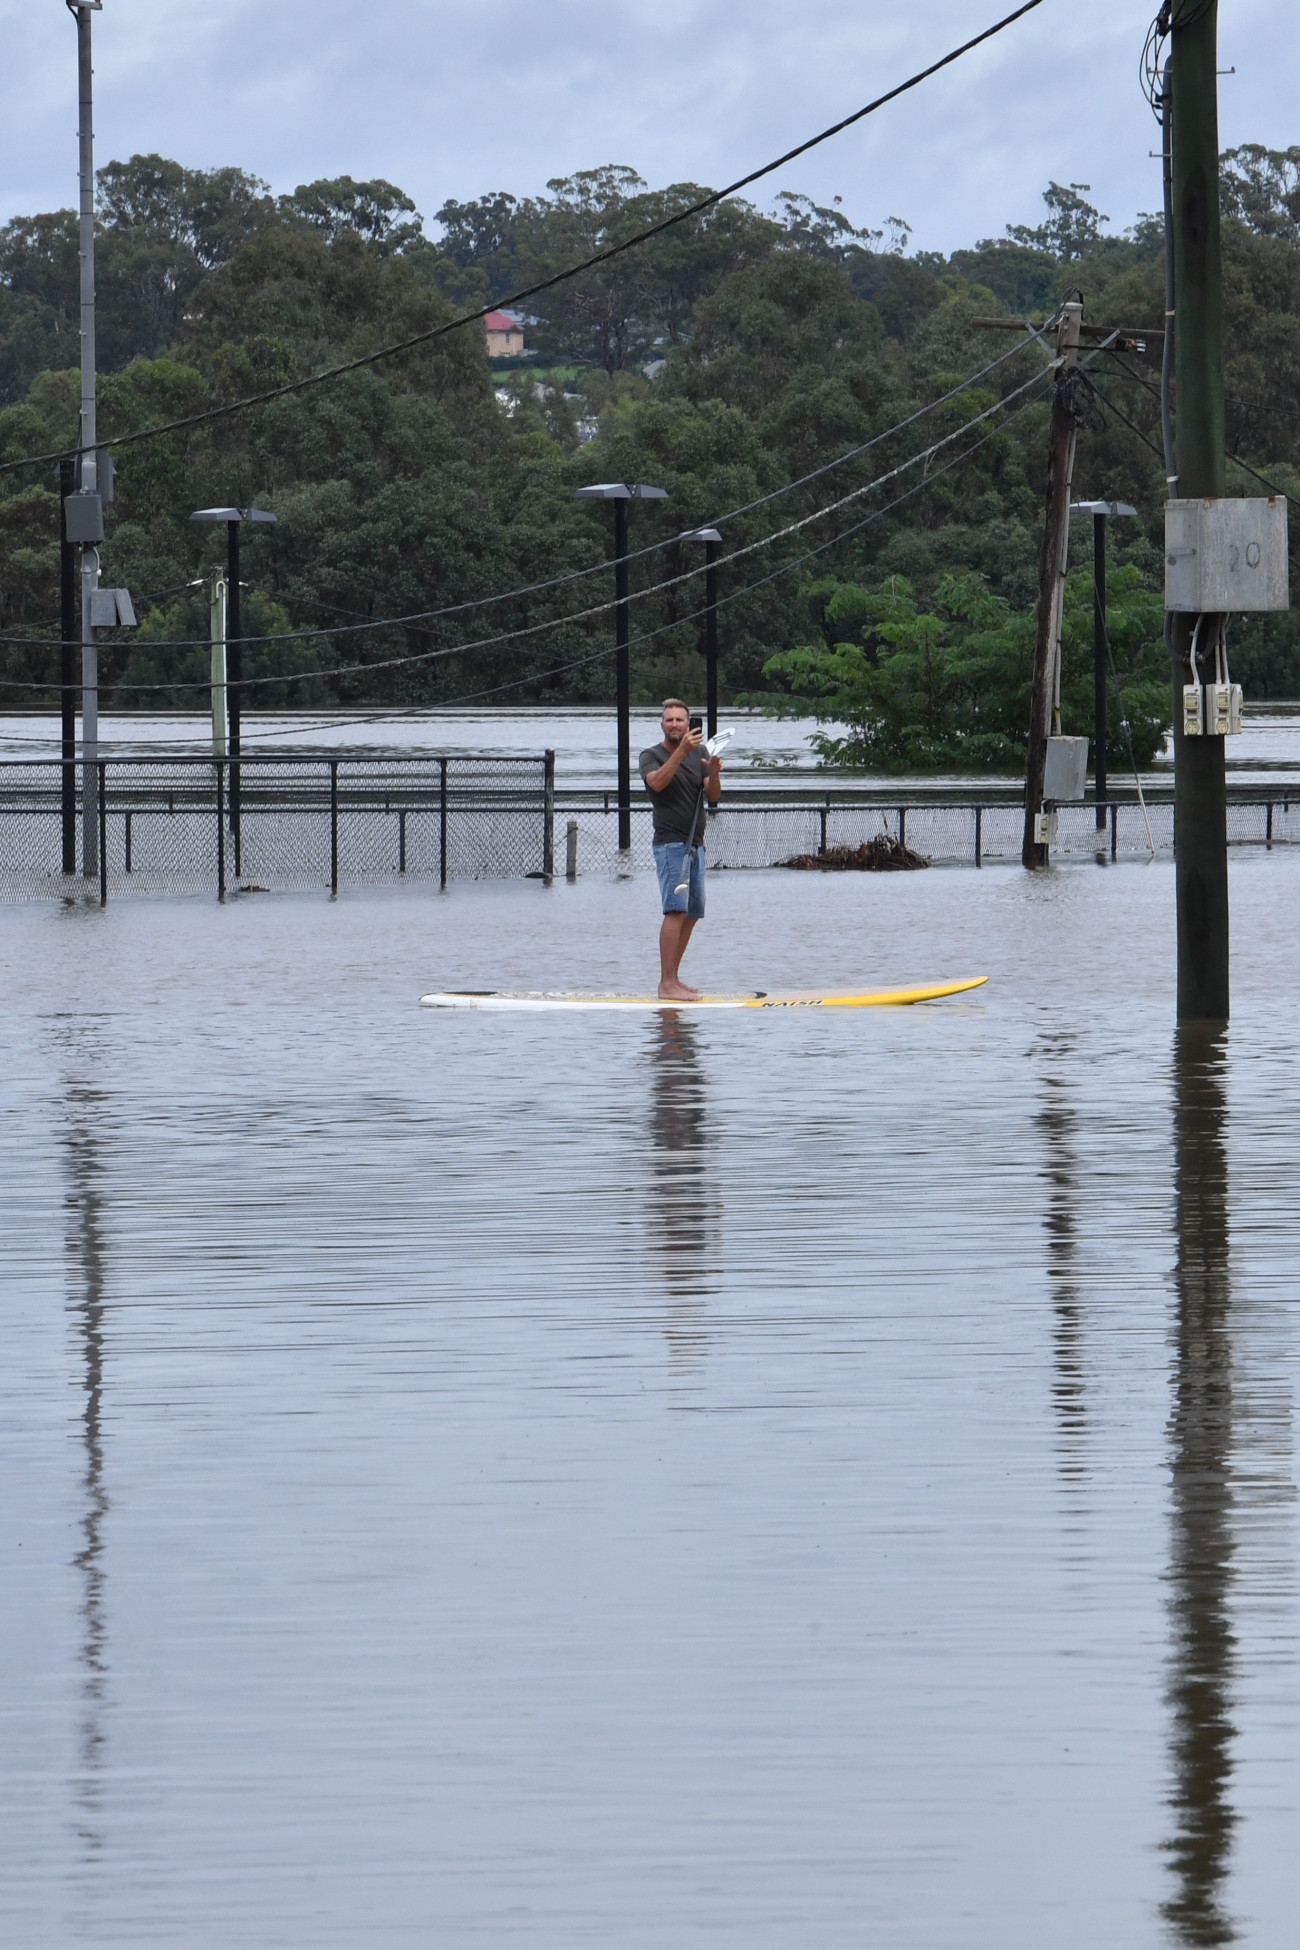 Camden, 2022. március 8.
Szörfdeszkával közlekedő férfi az árvízzel elöntött Camdenben 2022. március 8-án. A heves esőzések miatt áradások sújtják Ausztrália keleti partvidékét. A természeti katasztrófa miatt Új-Dél-Wales államban emberek tízezreit kellett evakuálni.
MTI/EPA/AAP/Dean Lewins